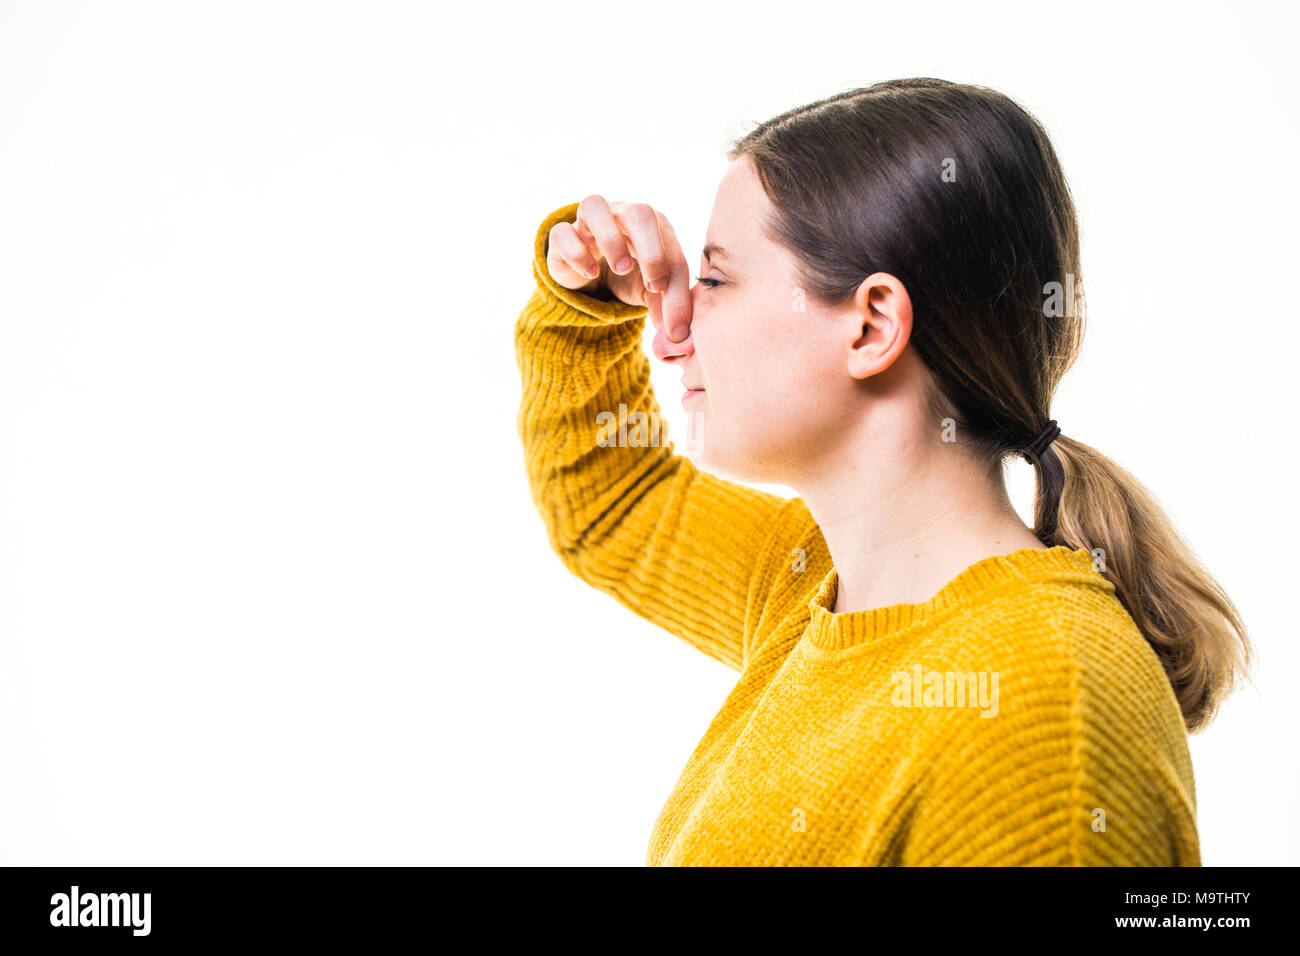 Une jeune femme de race blanche fille portant un chandail de cavalier jaune, de pincement ou de tenir son nez pour bloquer un stinky malodorantes terrible, de l'environnement nuisibles , debout sur un fond blanc, UK Banque D'Images